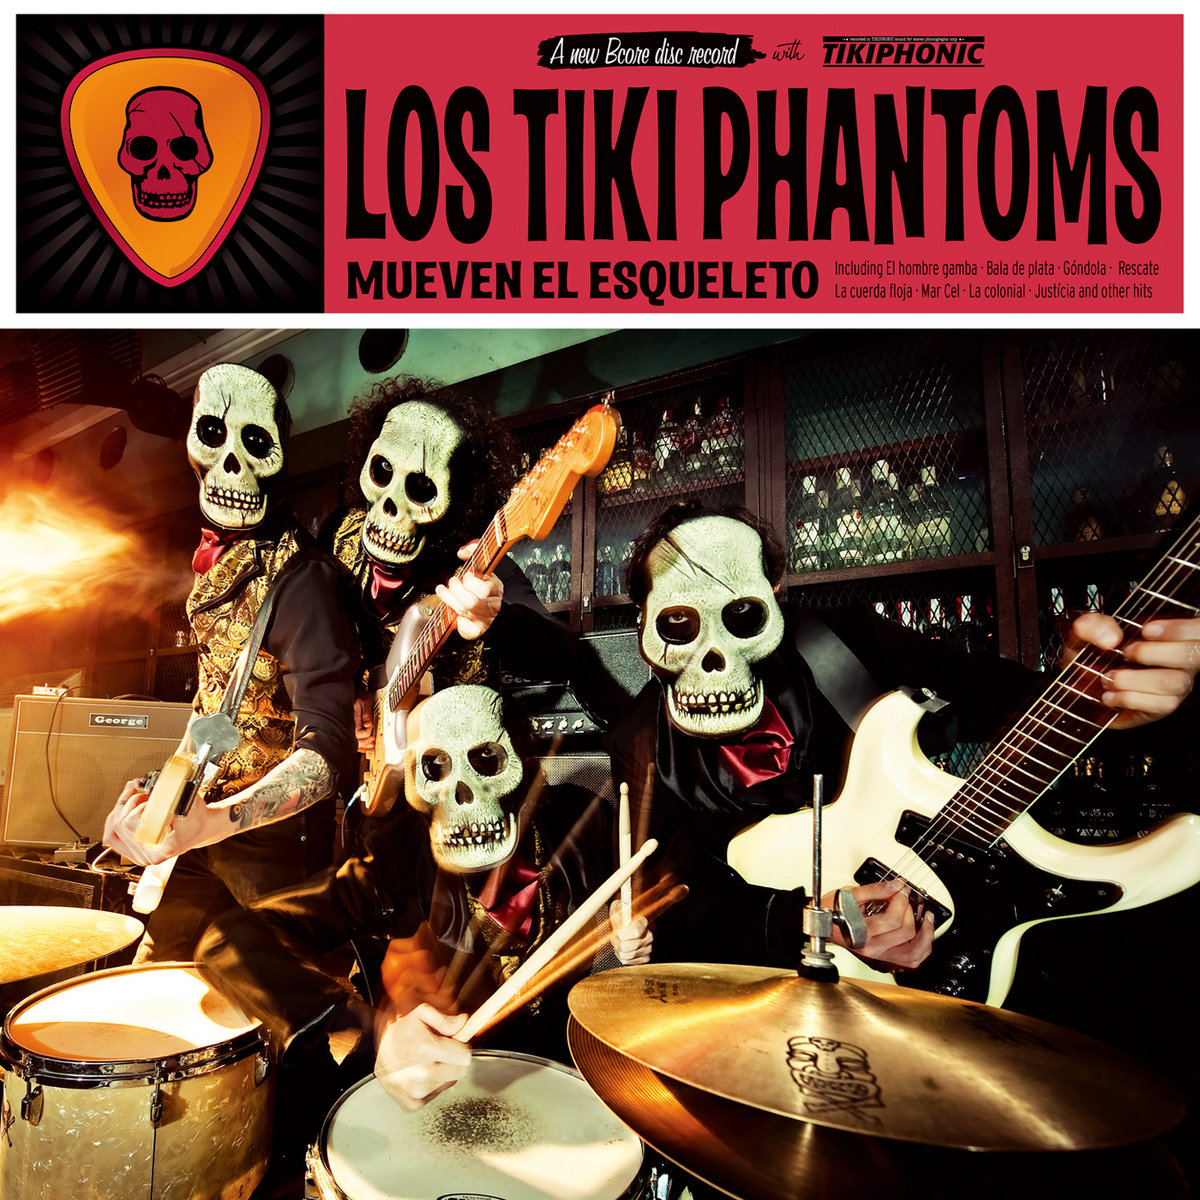 Los Tiki Phantoms "Mueven el esqueleto" LP